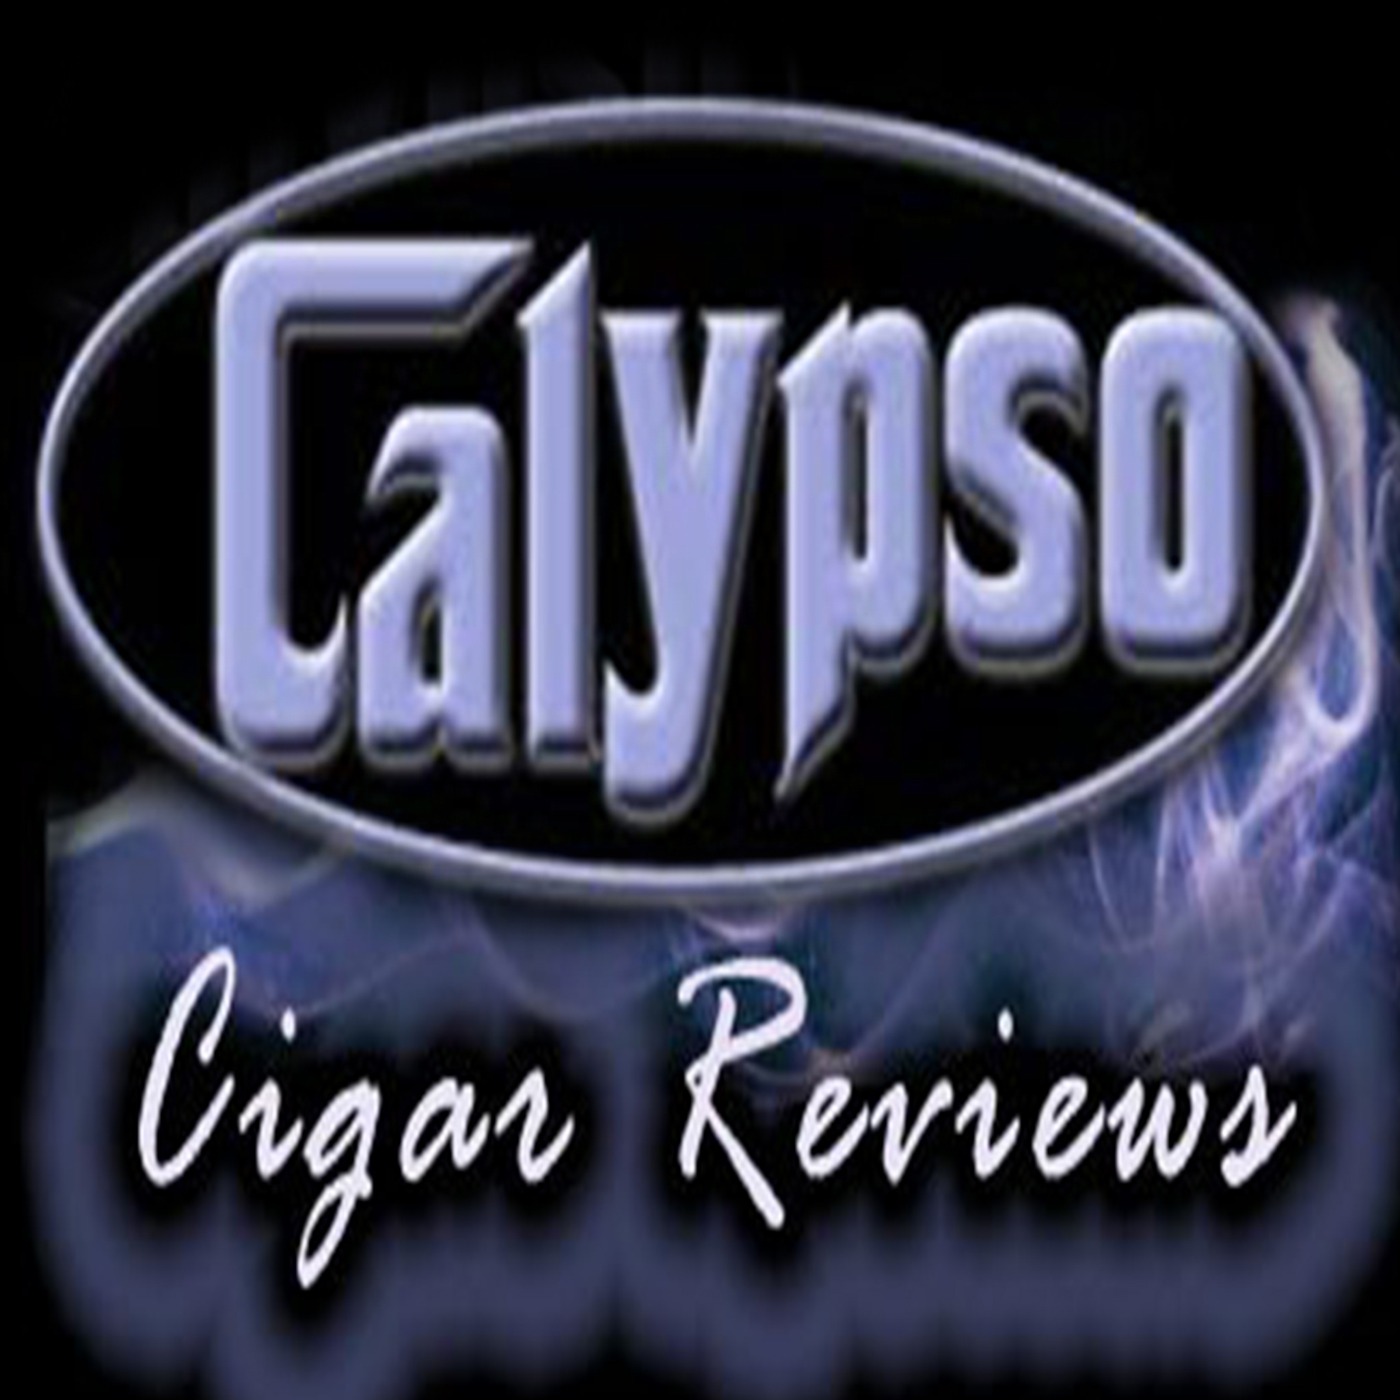 Calypso Nugget Ep.1